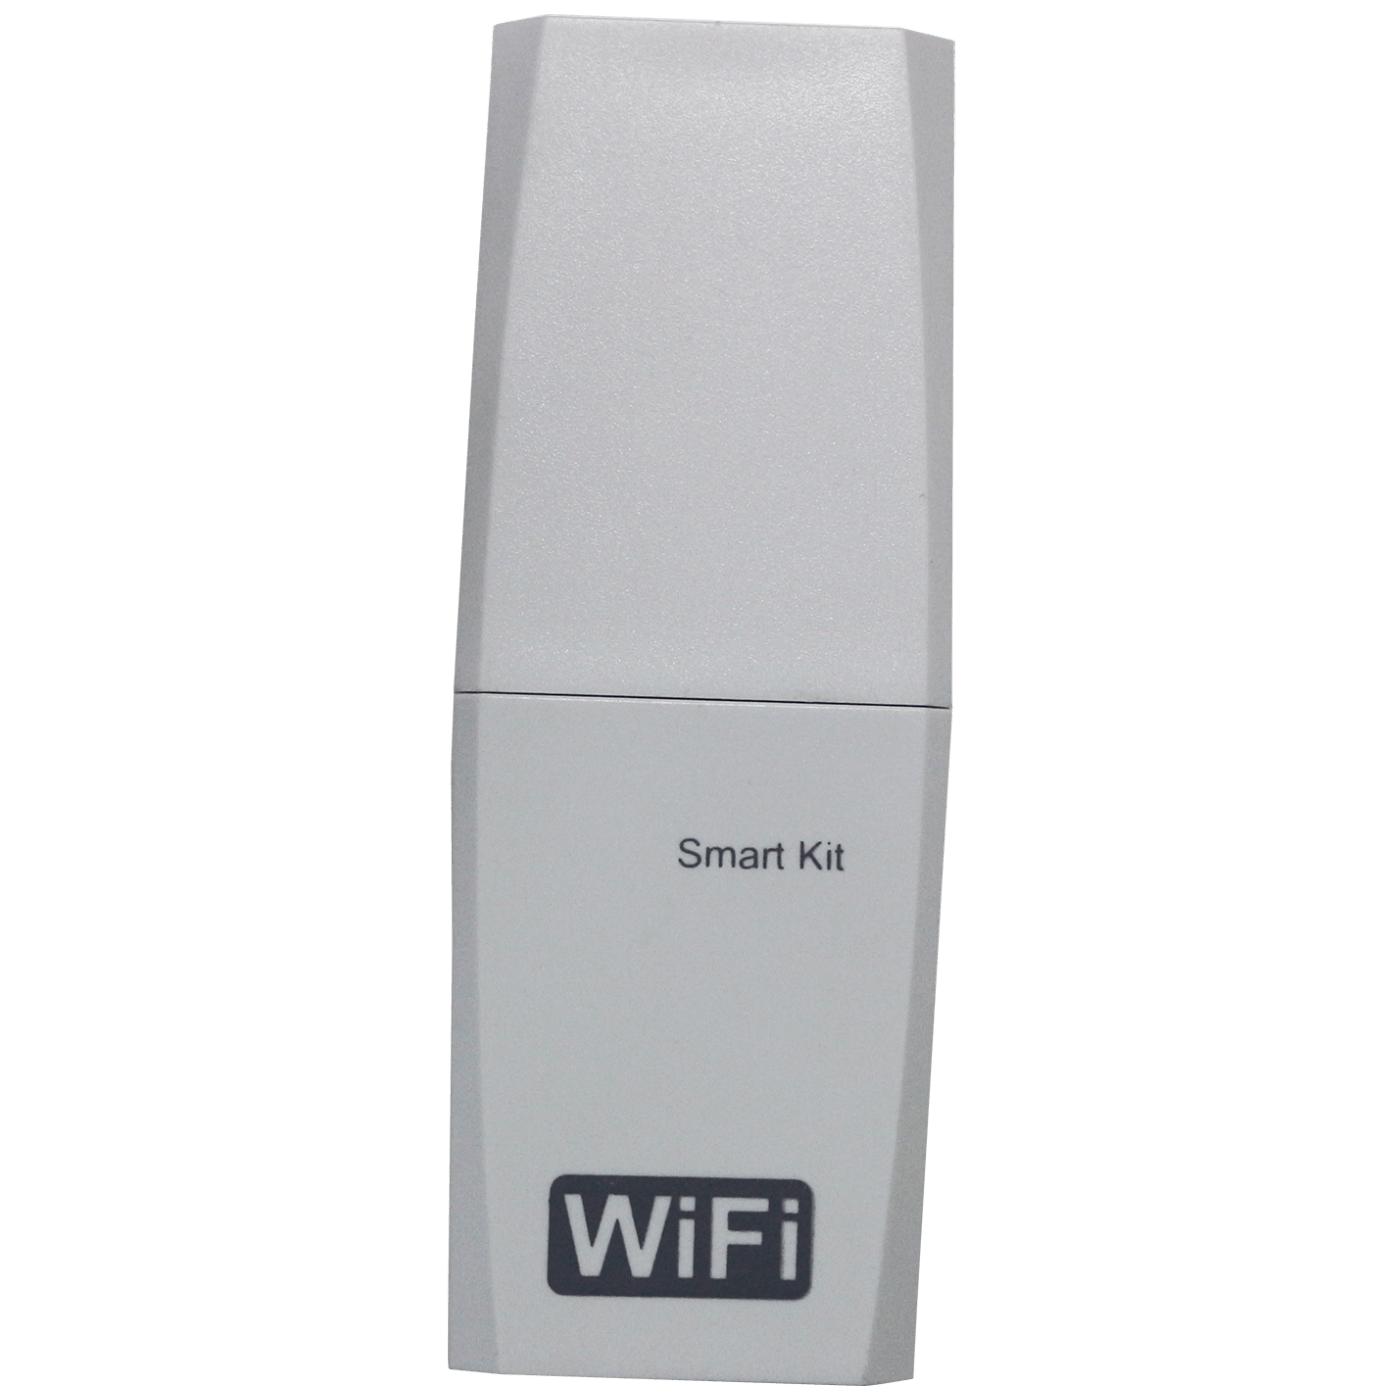 WiFi modul za klima uređaje AEVI - AERI